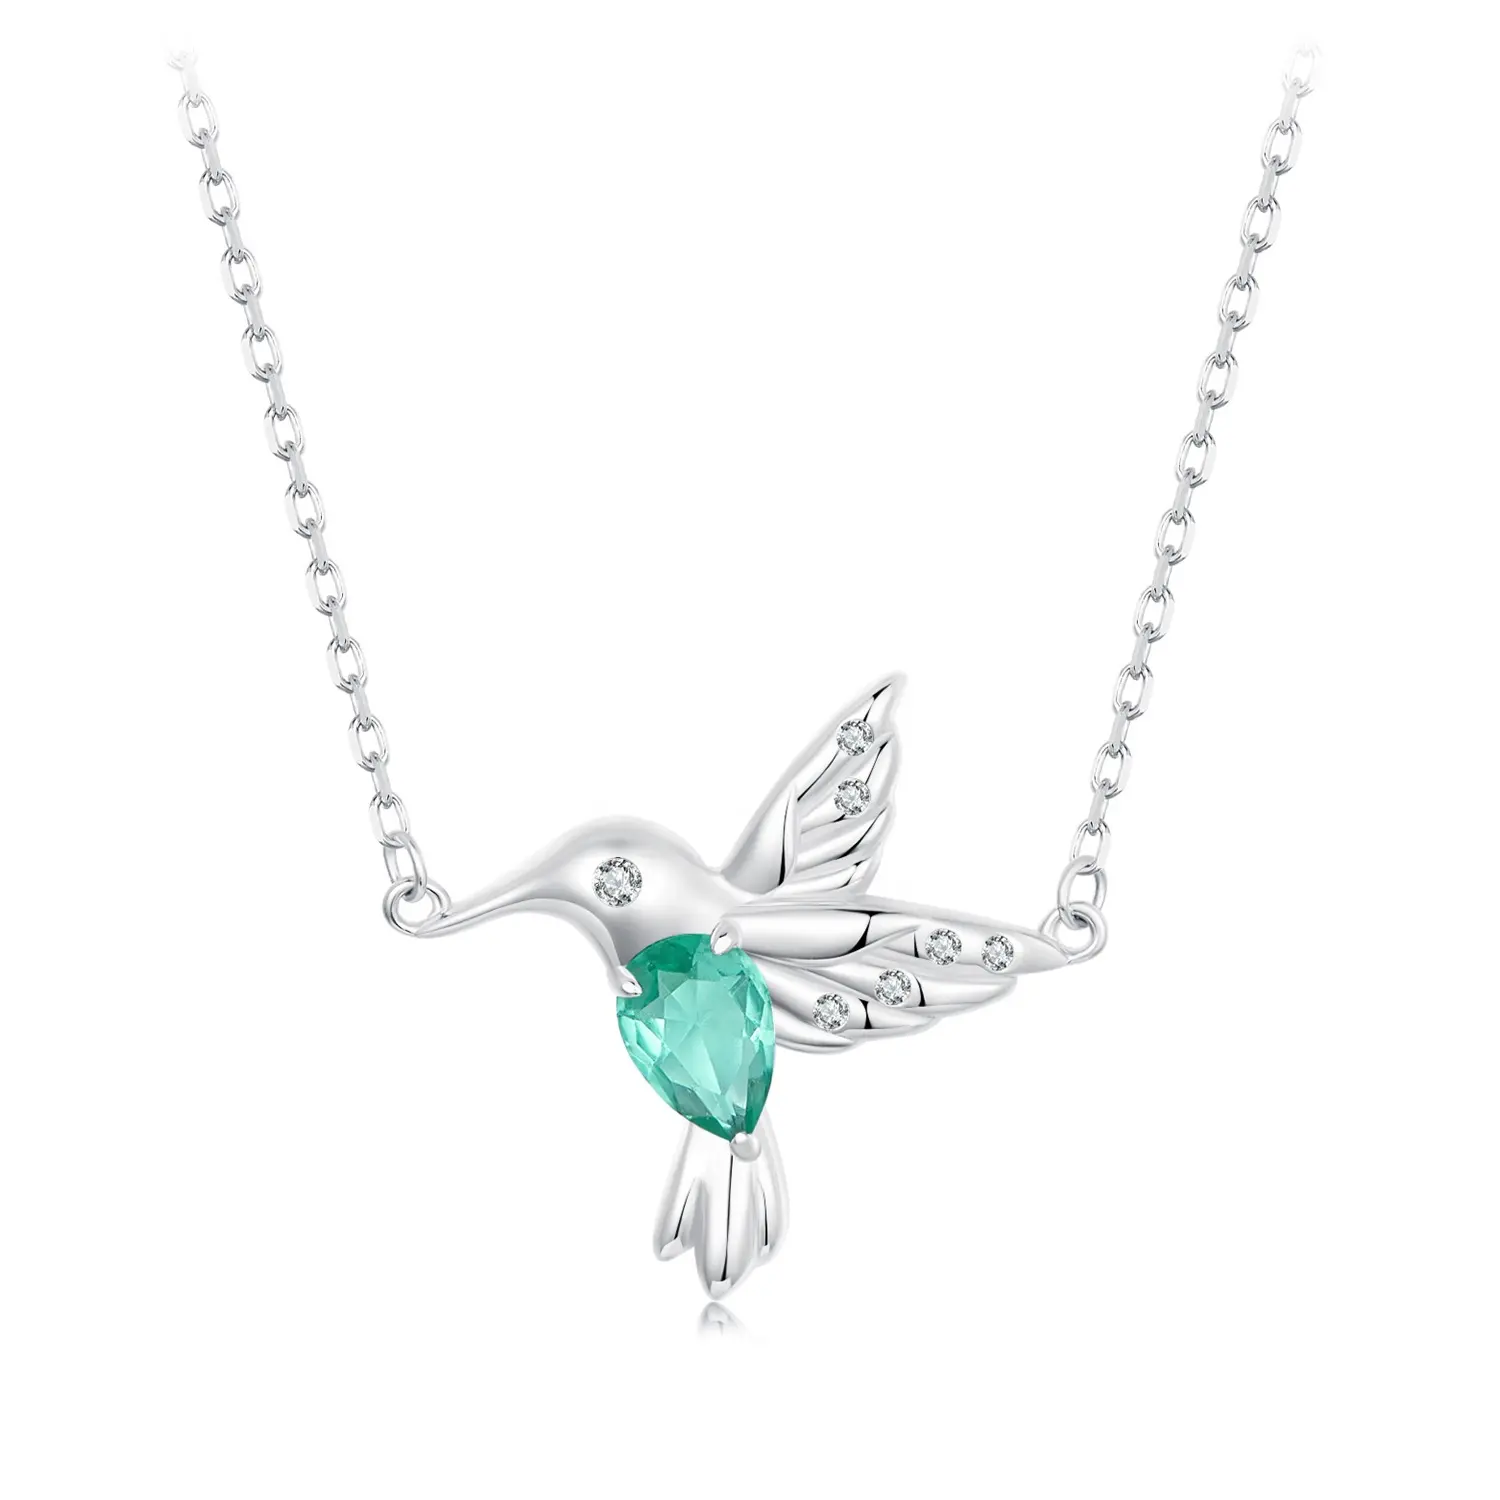 Youchuang pájaro delicado collar de joyería personalizado vidrio verde mejor amigo hecho a mano 925 collares de plata esterlina para mujeres